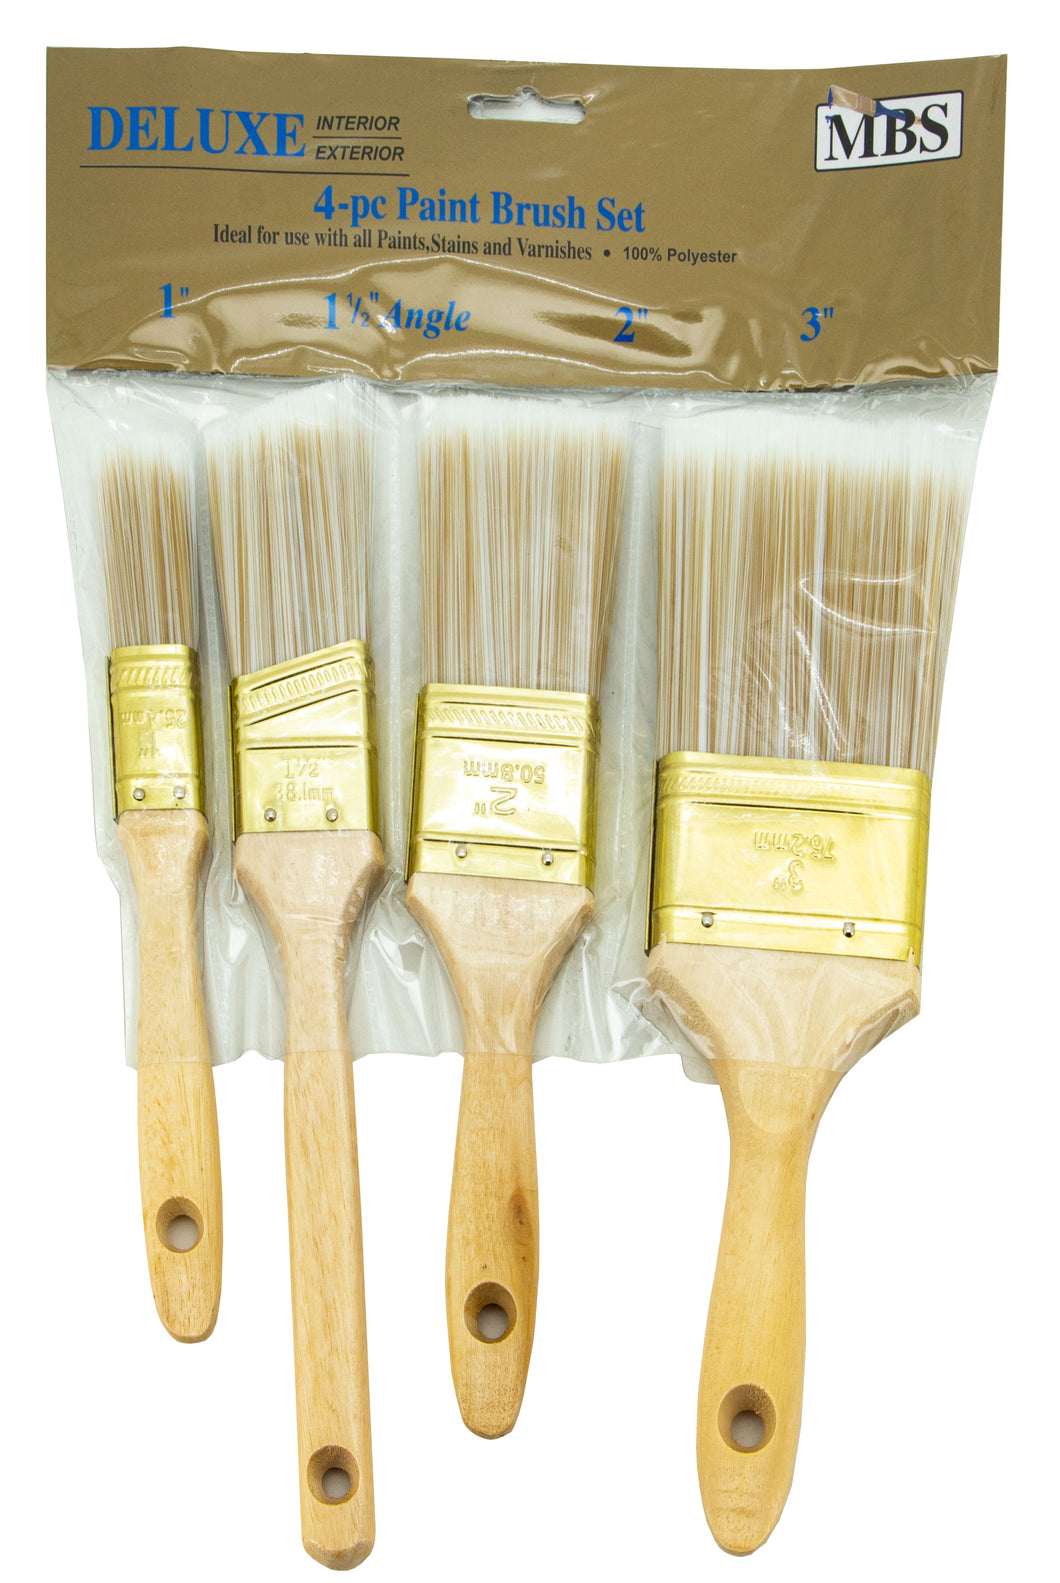 4pc Paint Brush Set 1